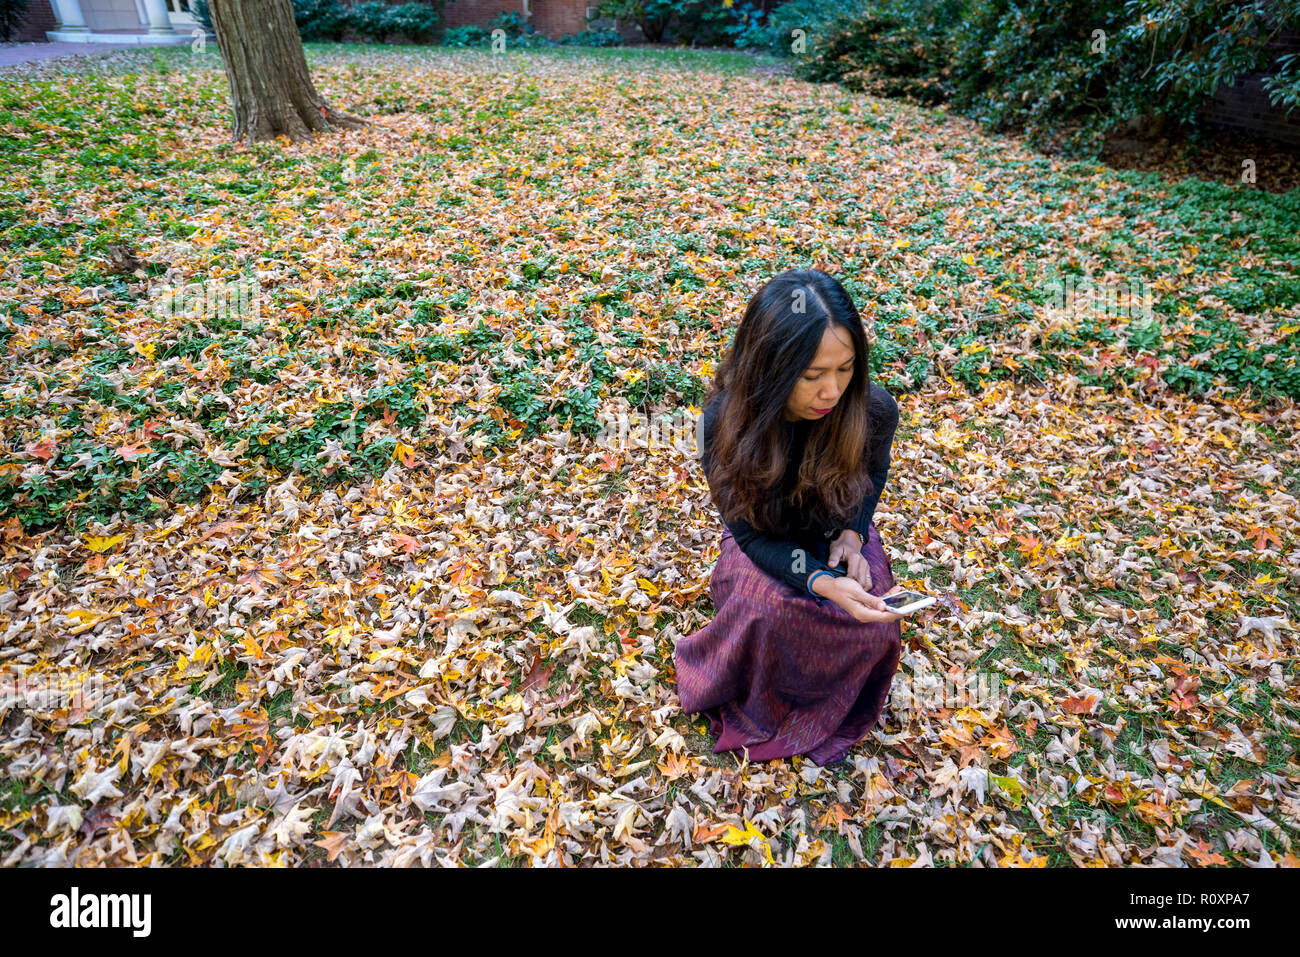 Mujer tailandesa arrodillados en el suelo rodeados de hojas en el otoño mirando a la cámara mirando al teléfono móvil Foto de stock